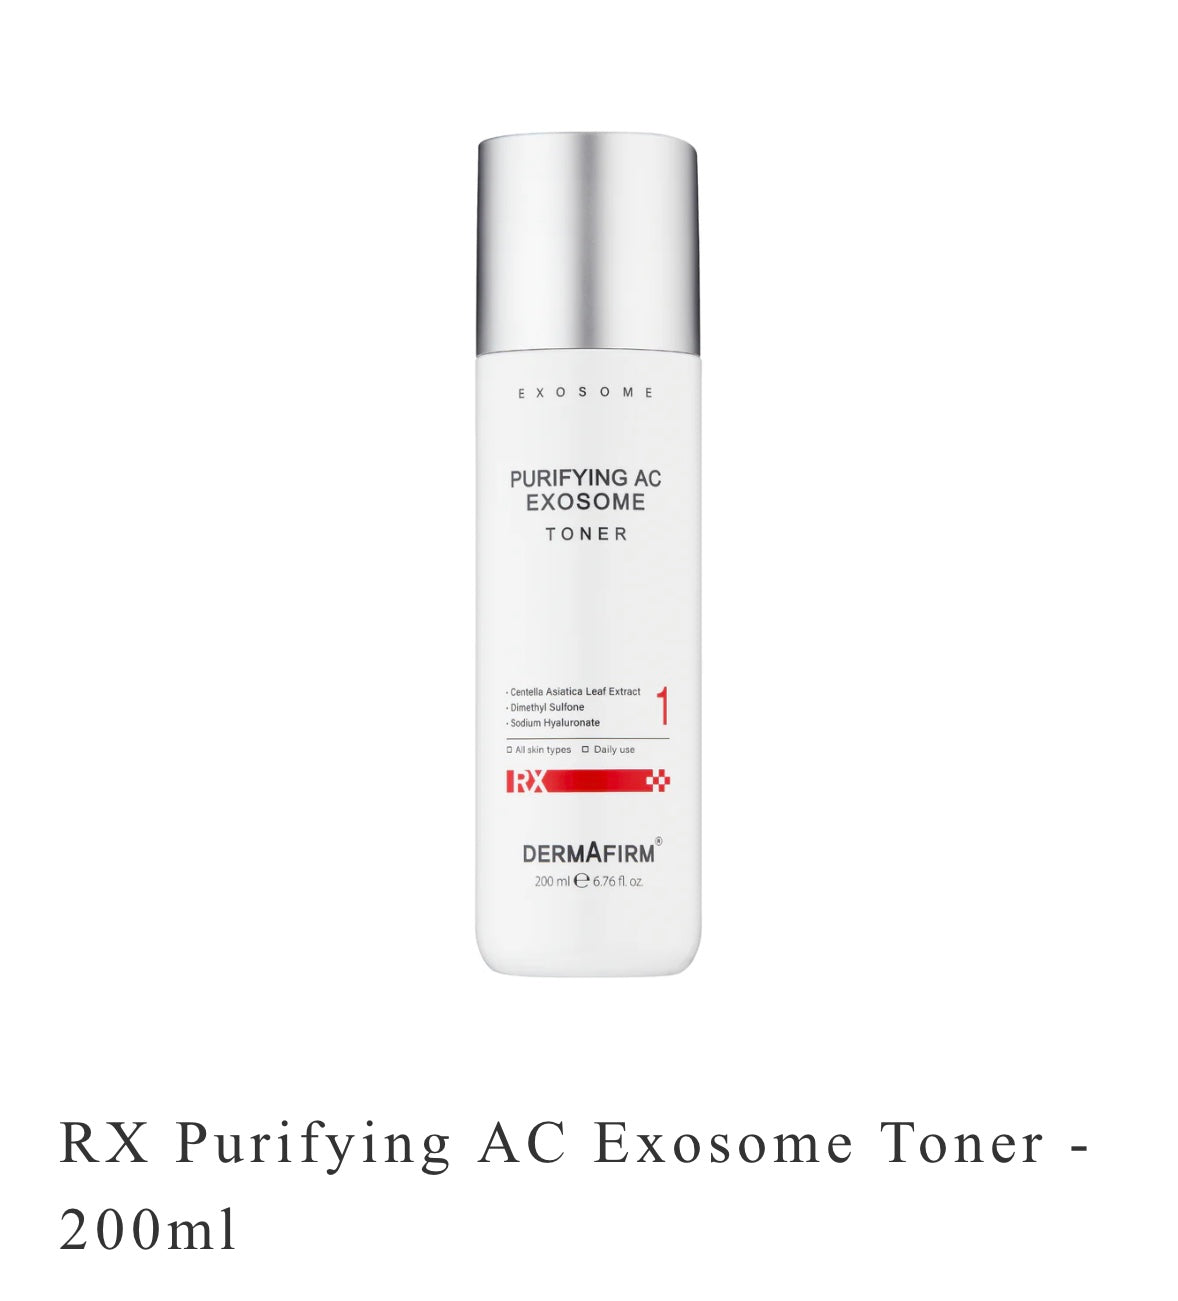 RX Purifying AC Exosome Toner